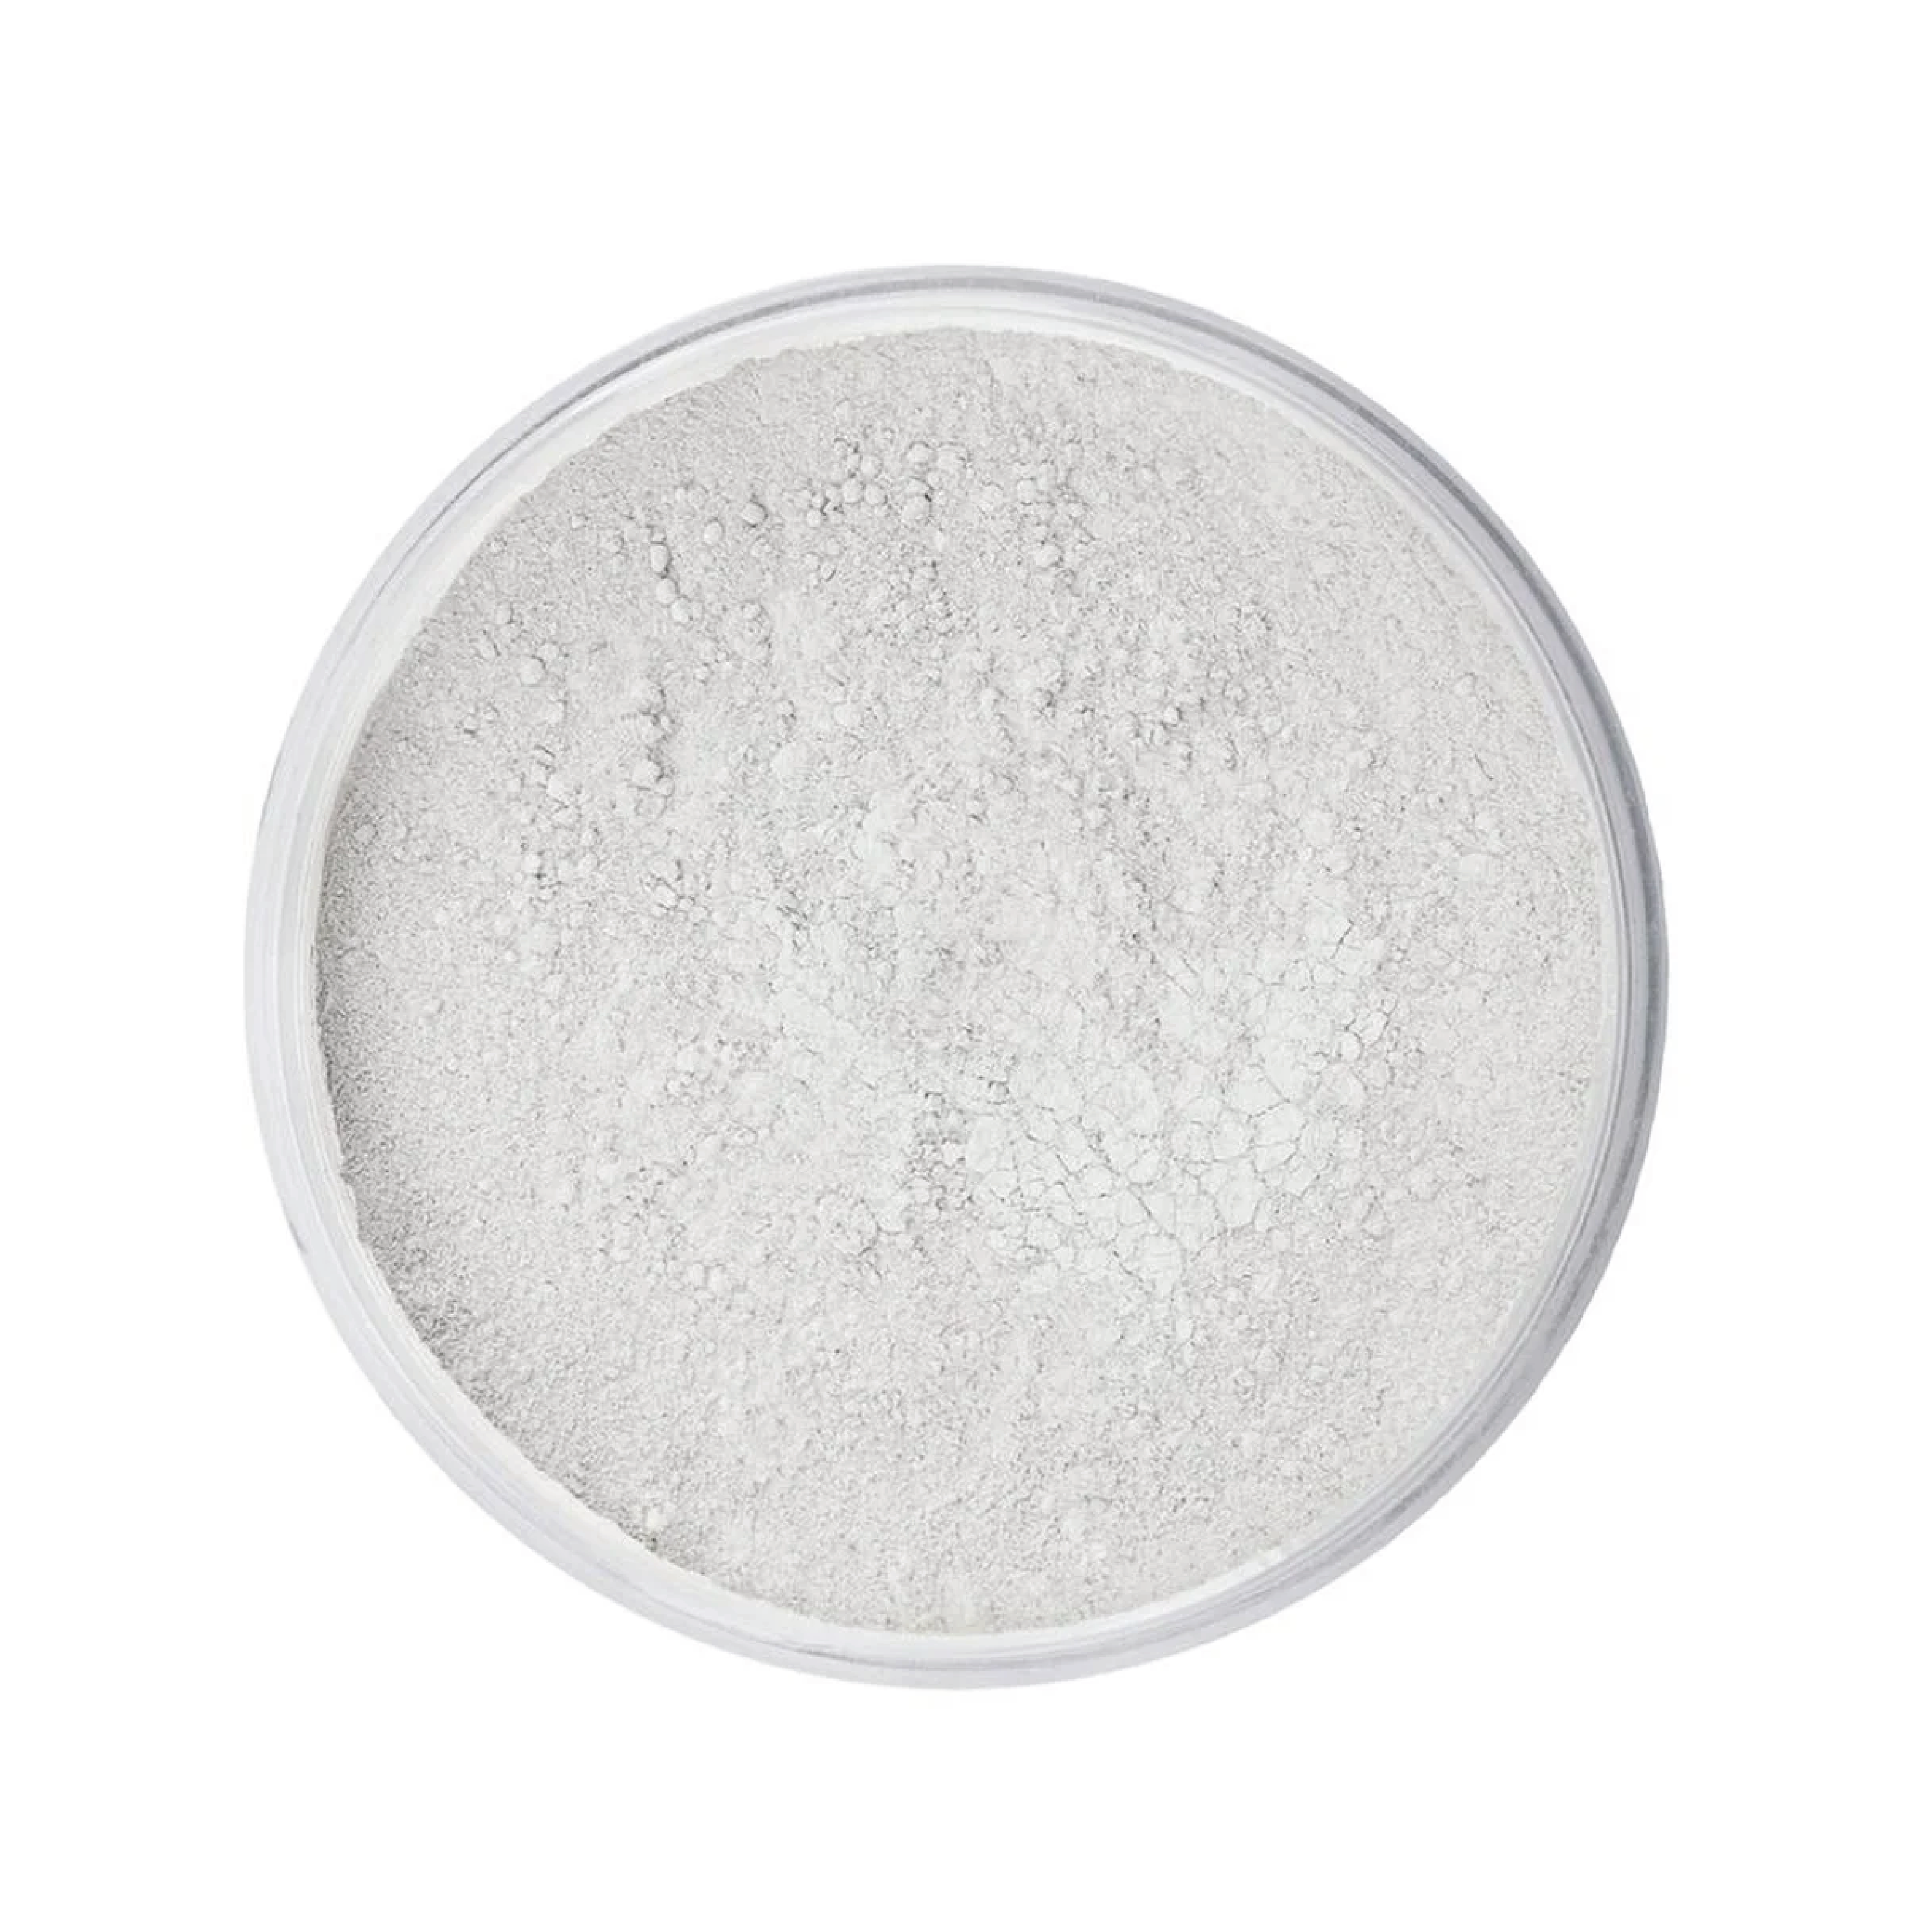 IDUN Minerals Loose Setting Powder, Tora, 9 gram